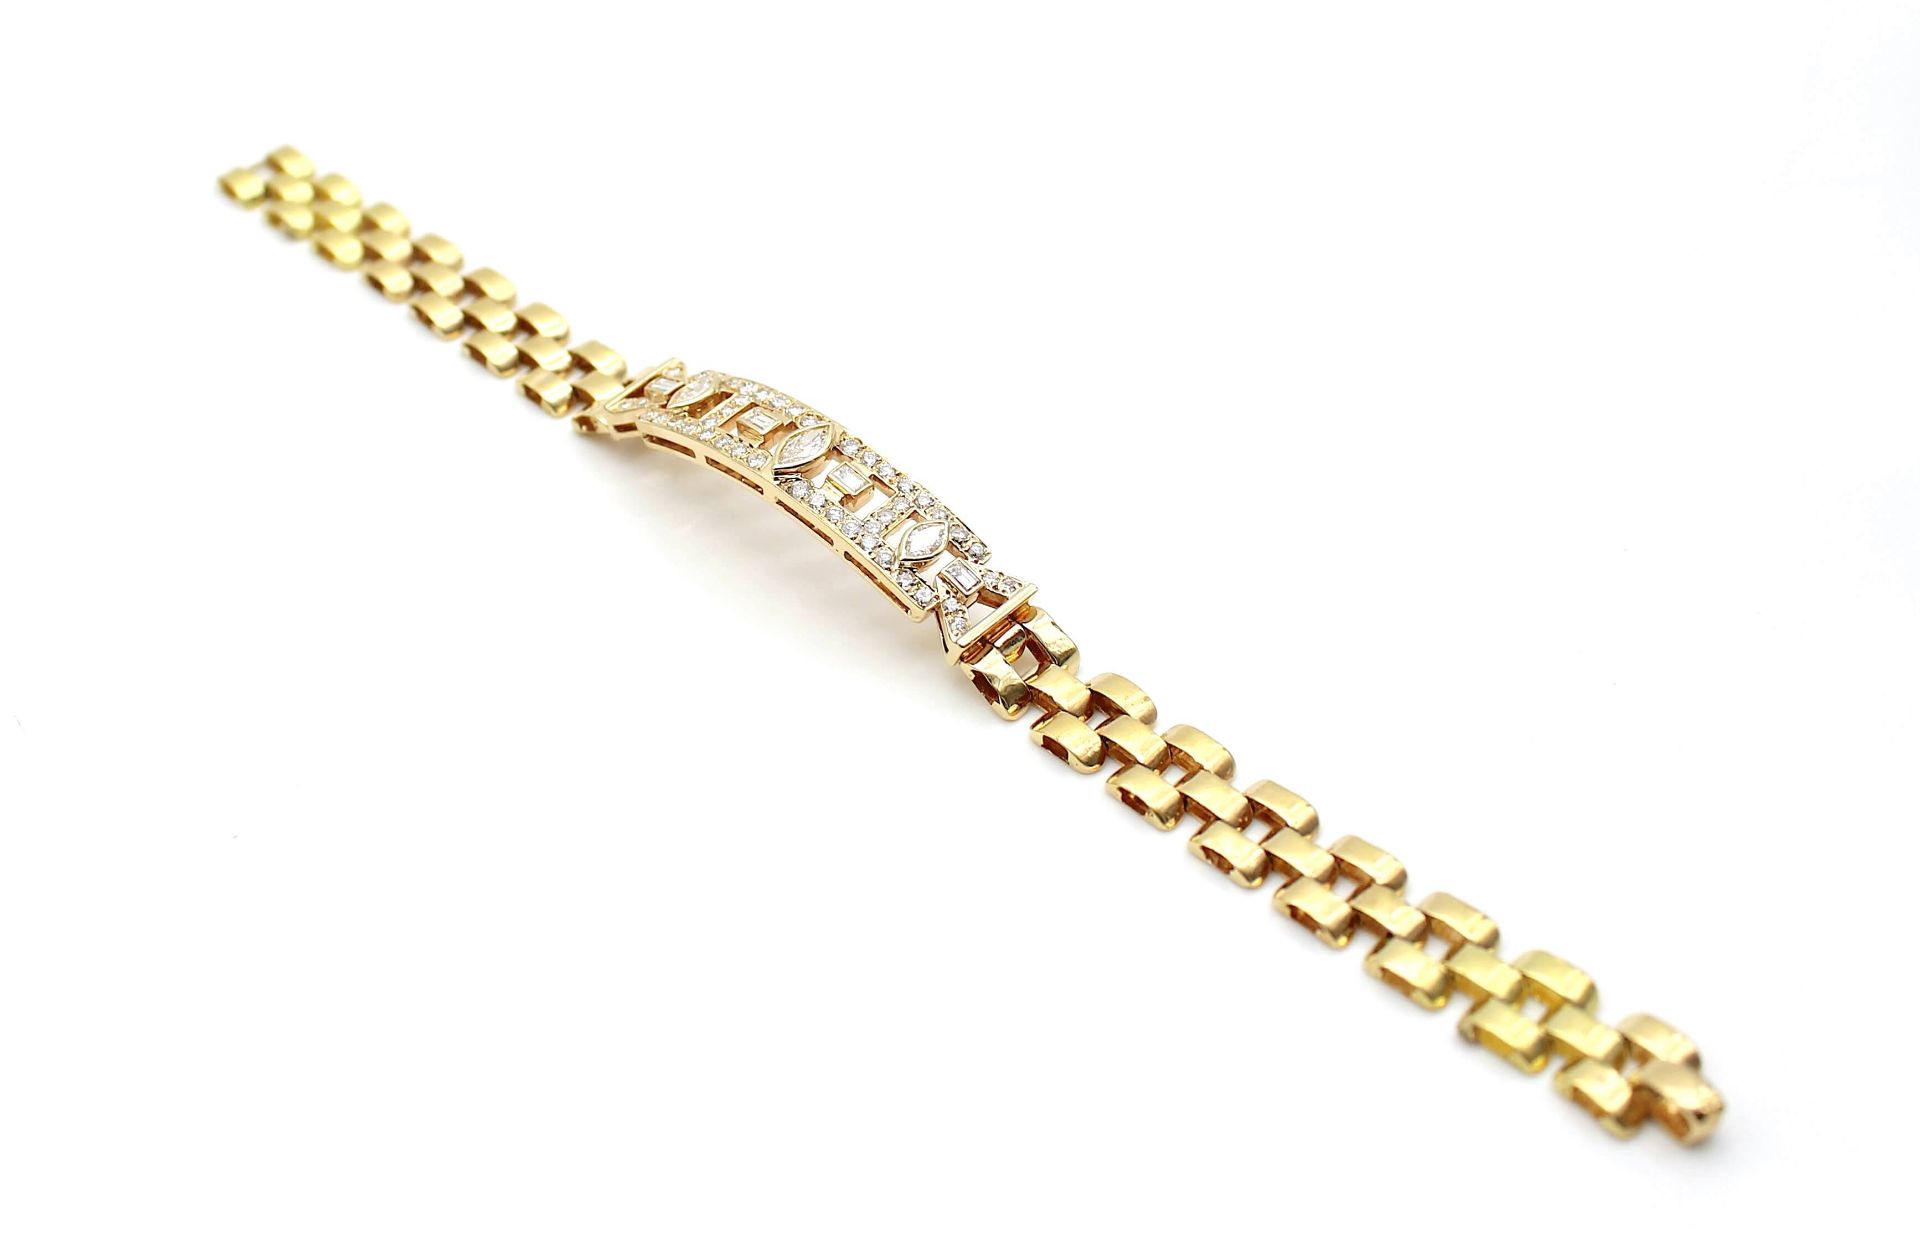 Armband aus 750er Gold mit 46 Brillanten und 7 Diamanten - Image 2 of 3